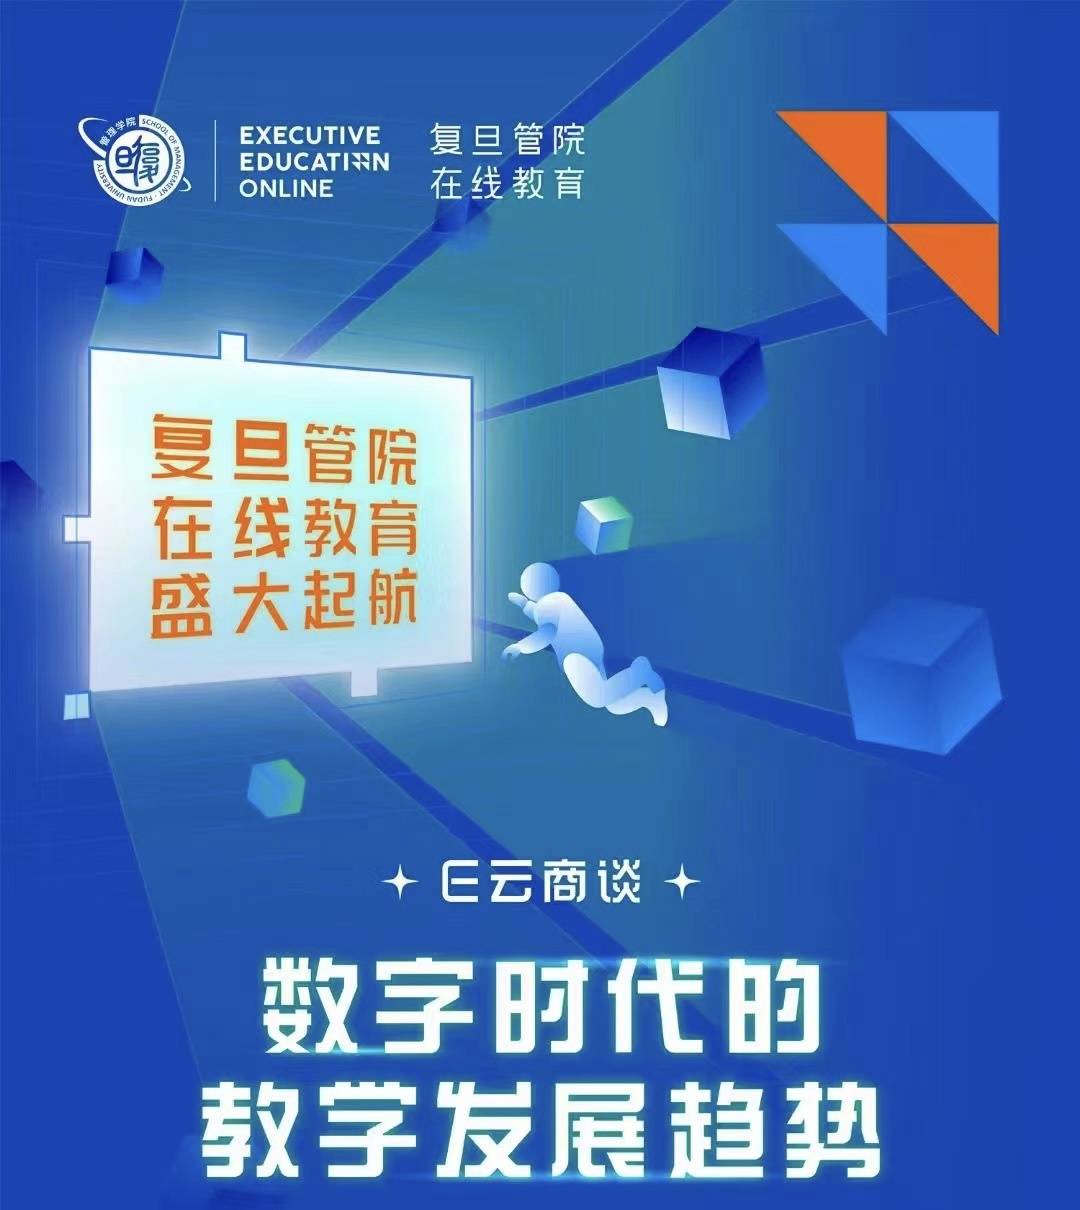 北京大學管理學院麵世幼教網絡平台
 ，打造出數智今後“景豐純”管理學